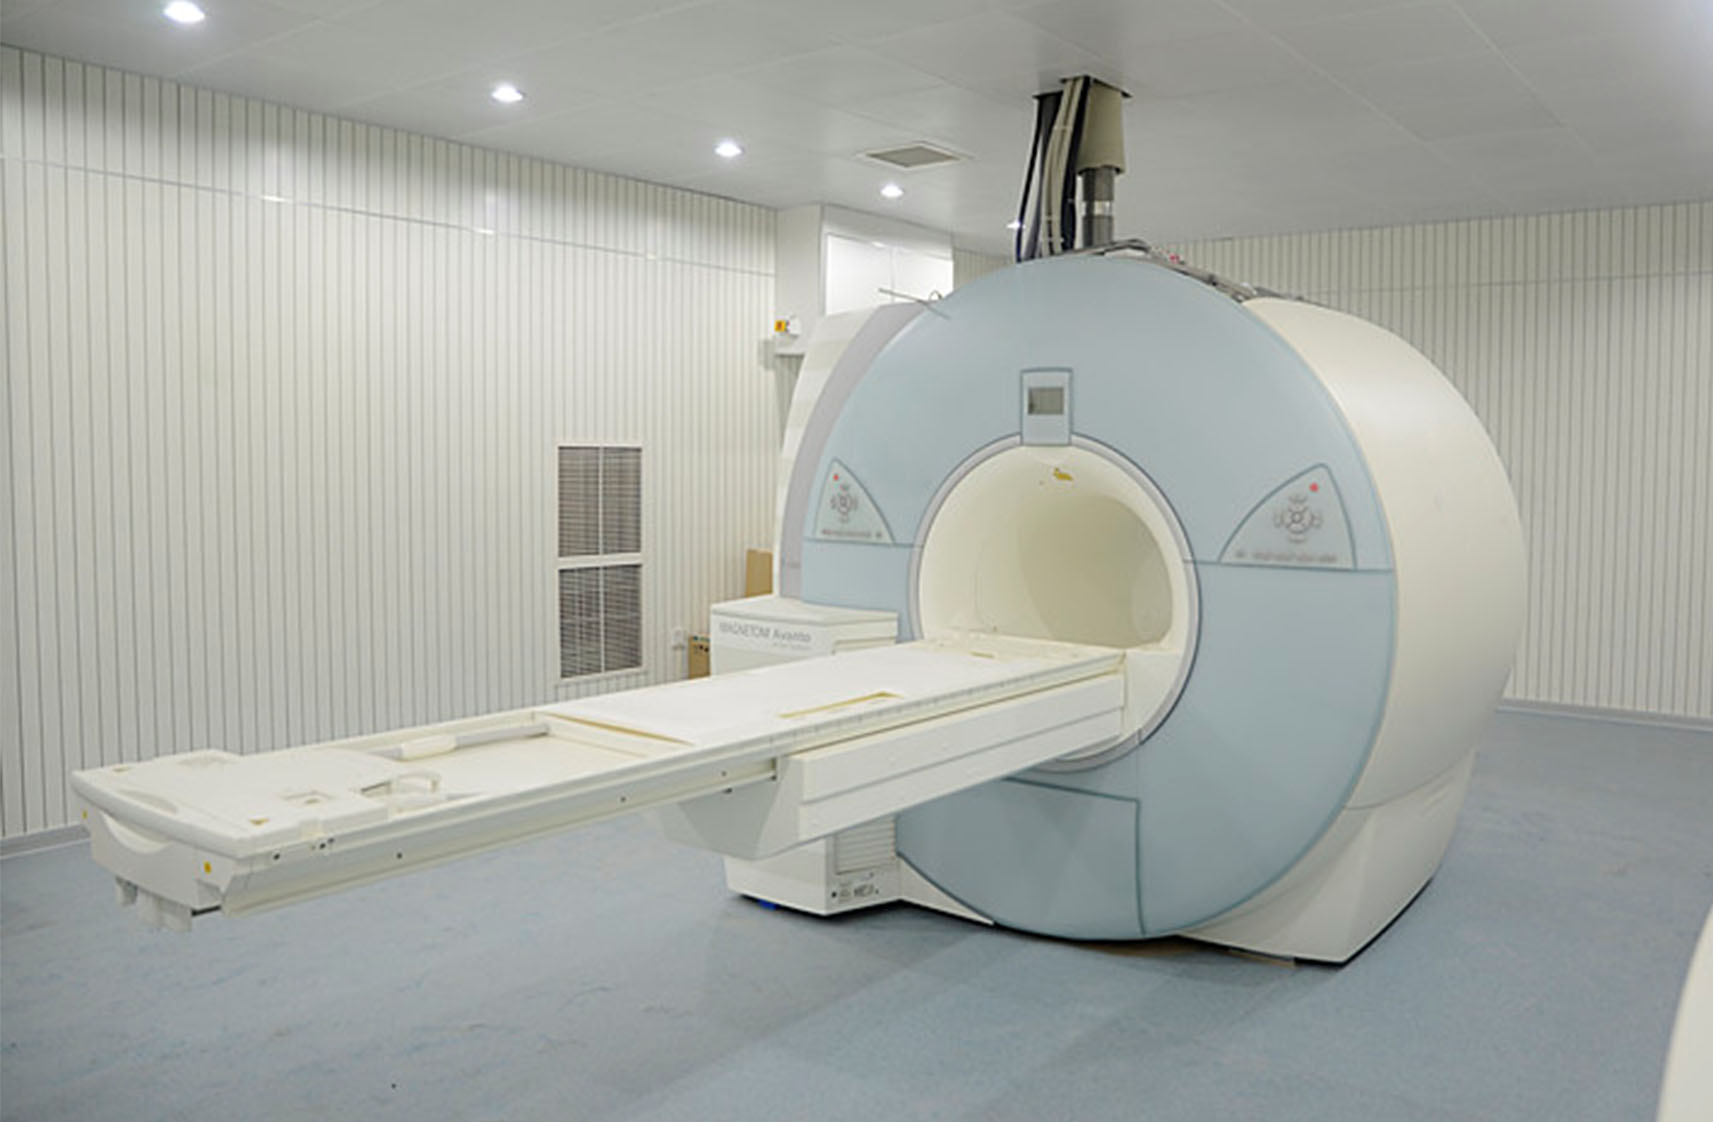 核磁共振和CT的区别是什么？在做检查时该如何选择？ - 知乎